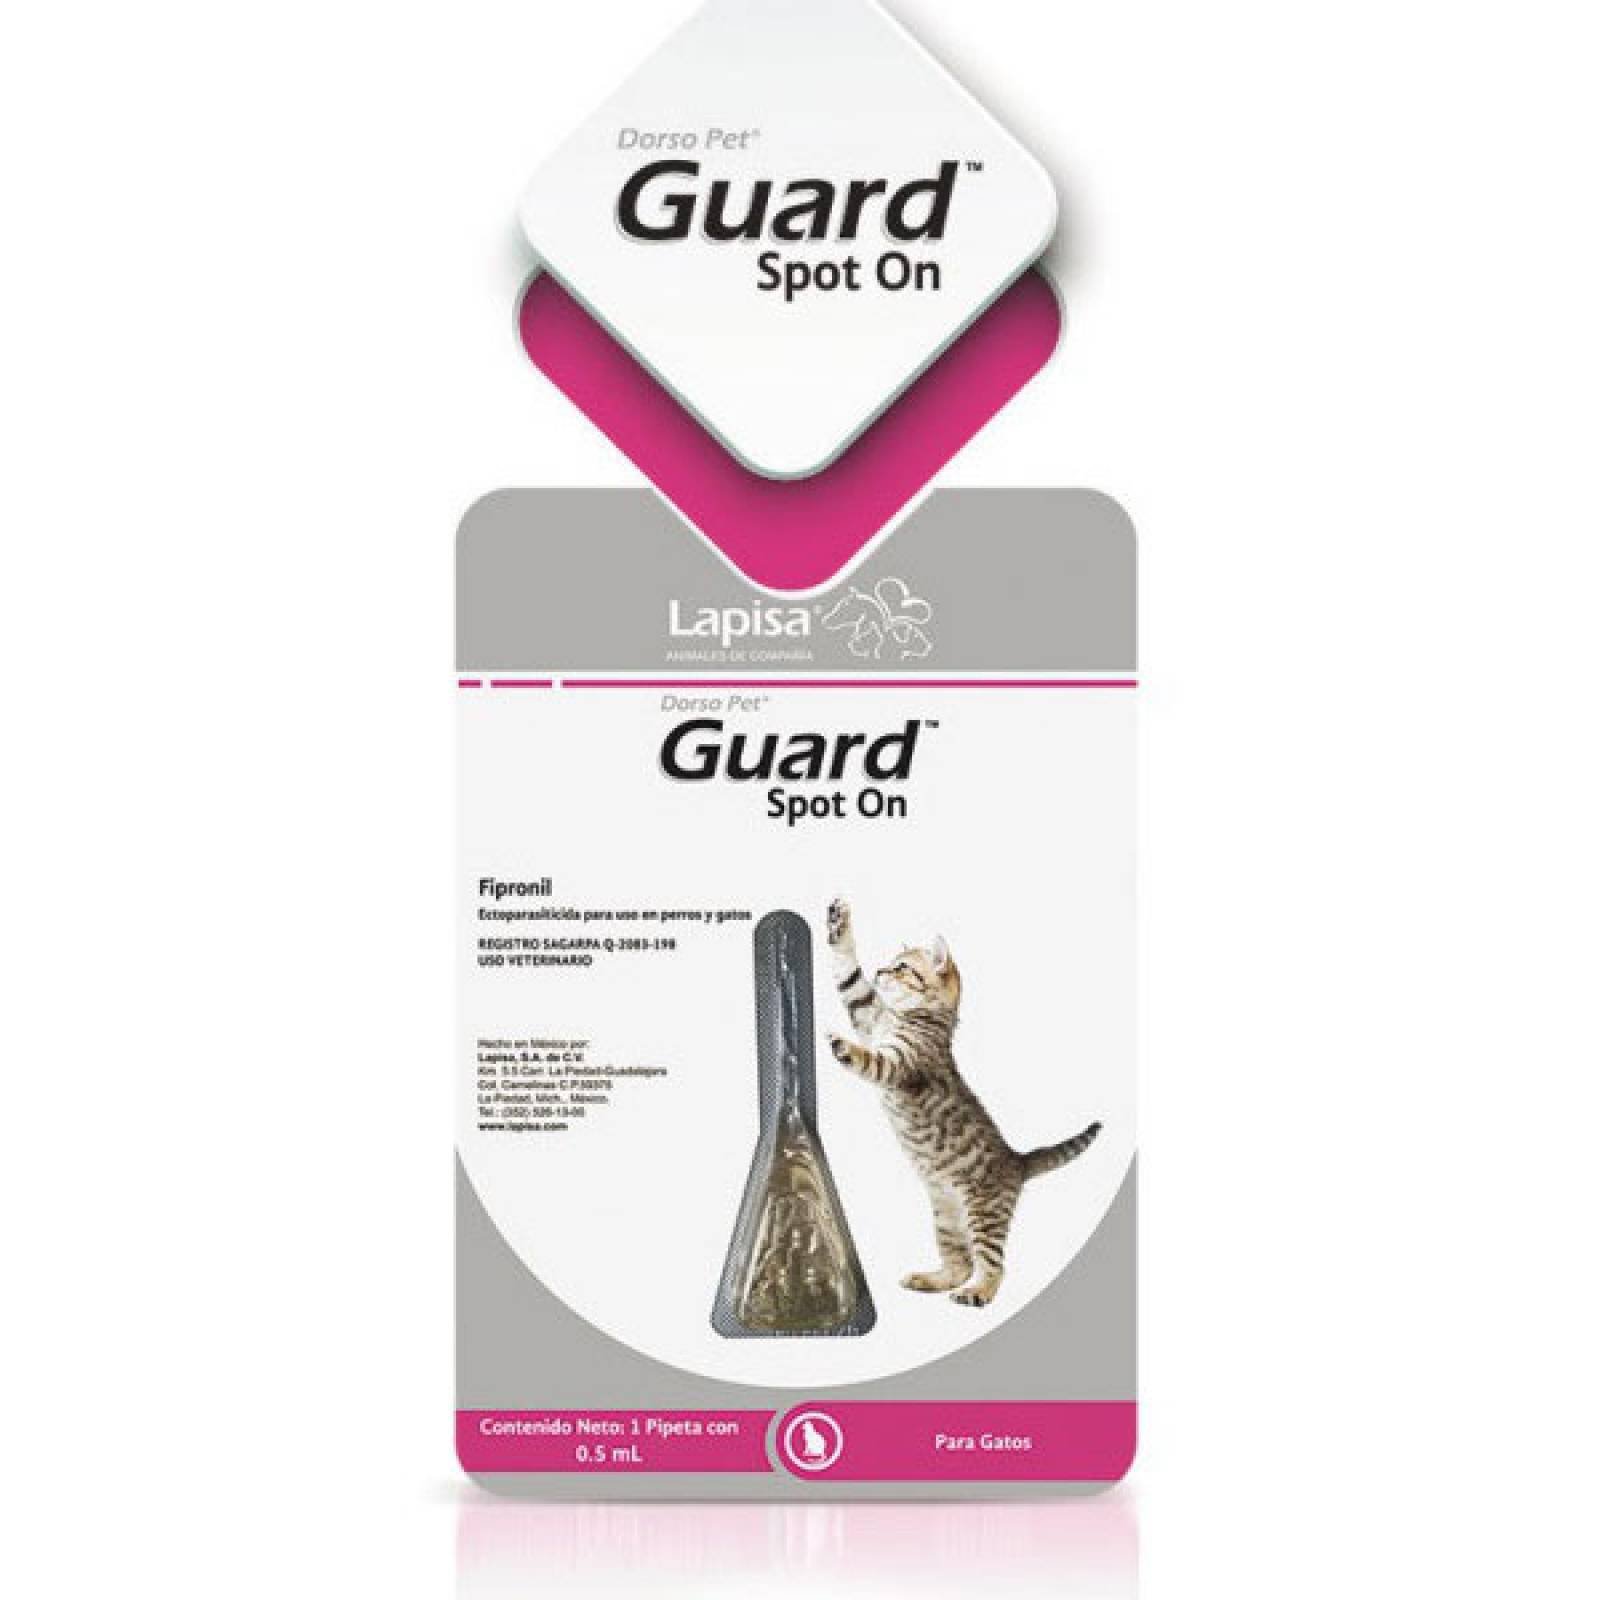 Dorso Pet Guard Spot para Gatos 1 pipeta x 0.5 ml